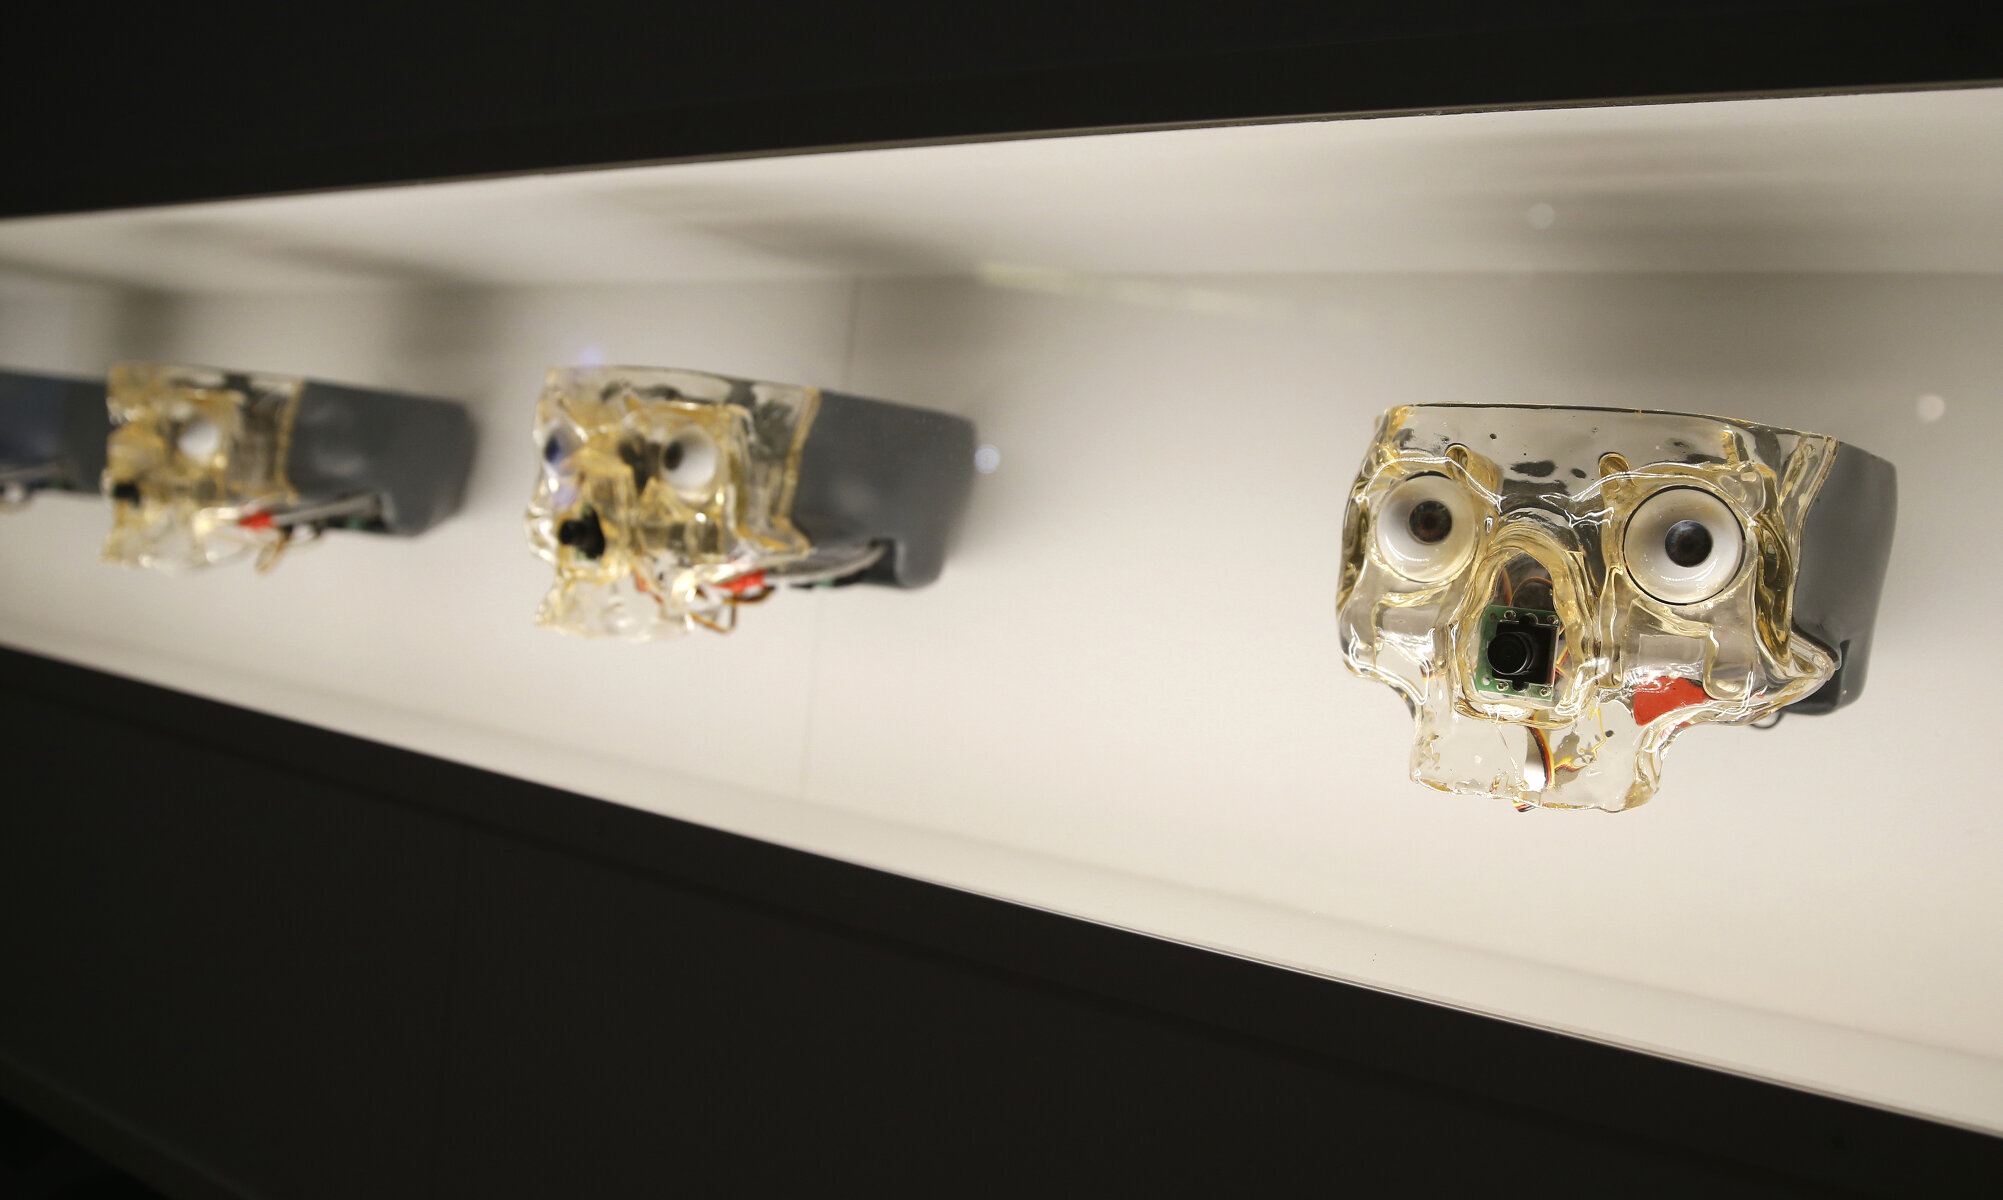 <p>Произведение канадского инженера Луи-Филиппа Демерса, показывающее искусственный череп с роботизированными глазами-камерами, которые следят за движениями посетителей выставки. На фото: лица роботов &laquo;Area V5&raquo;, созданных в 2009 году.</p>